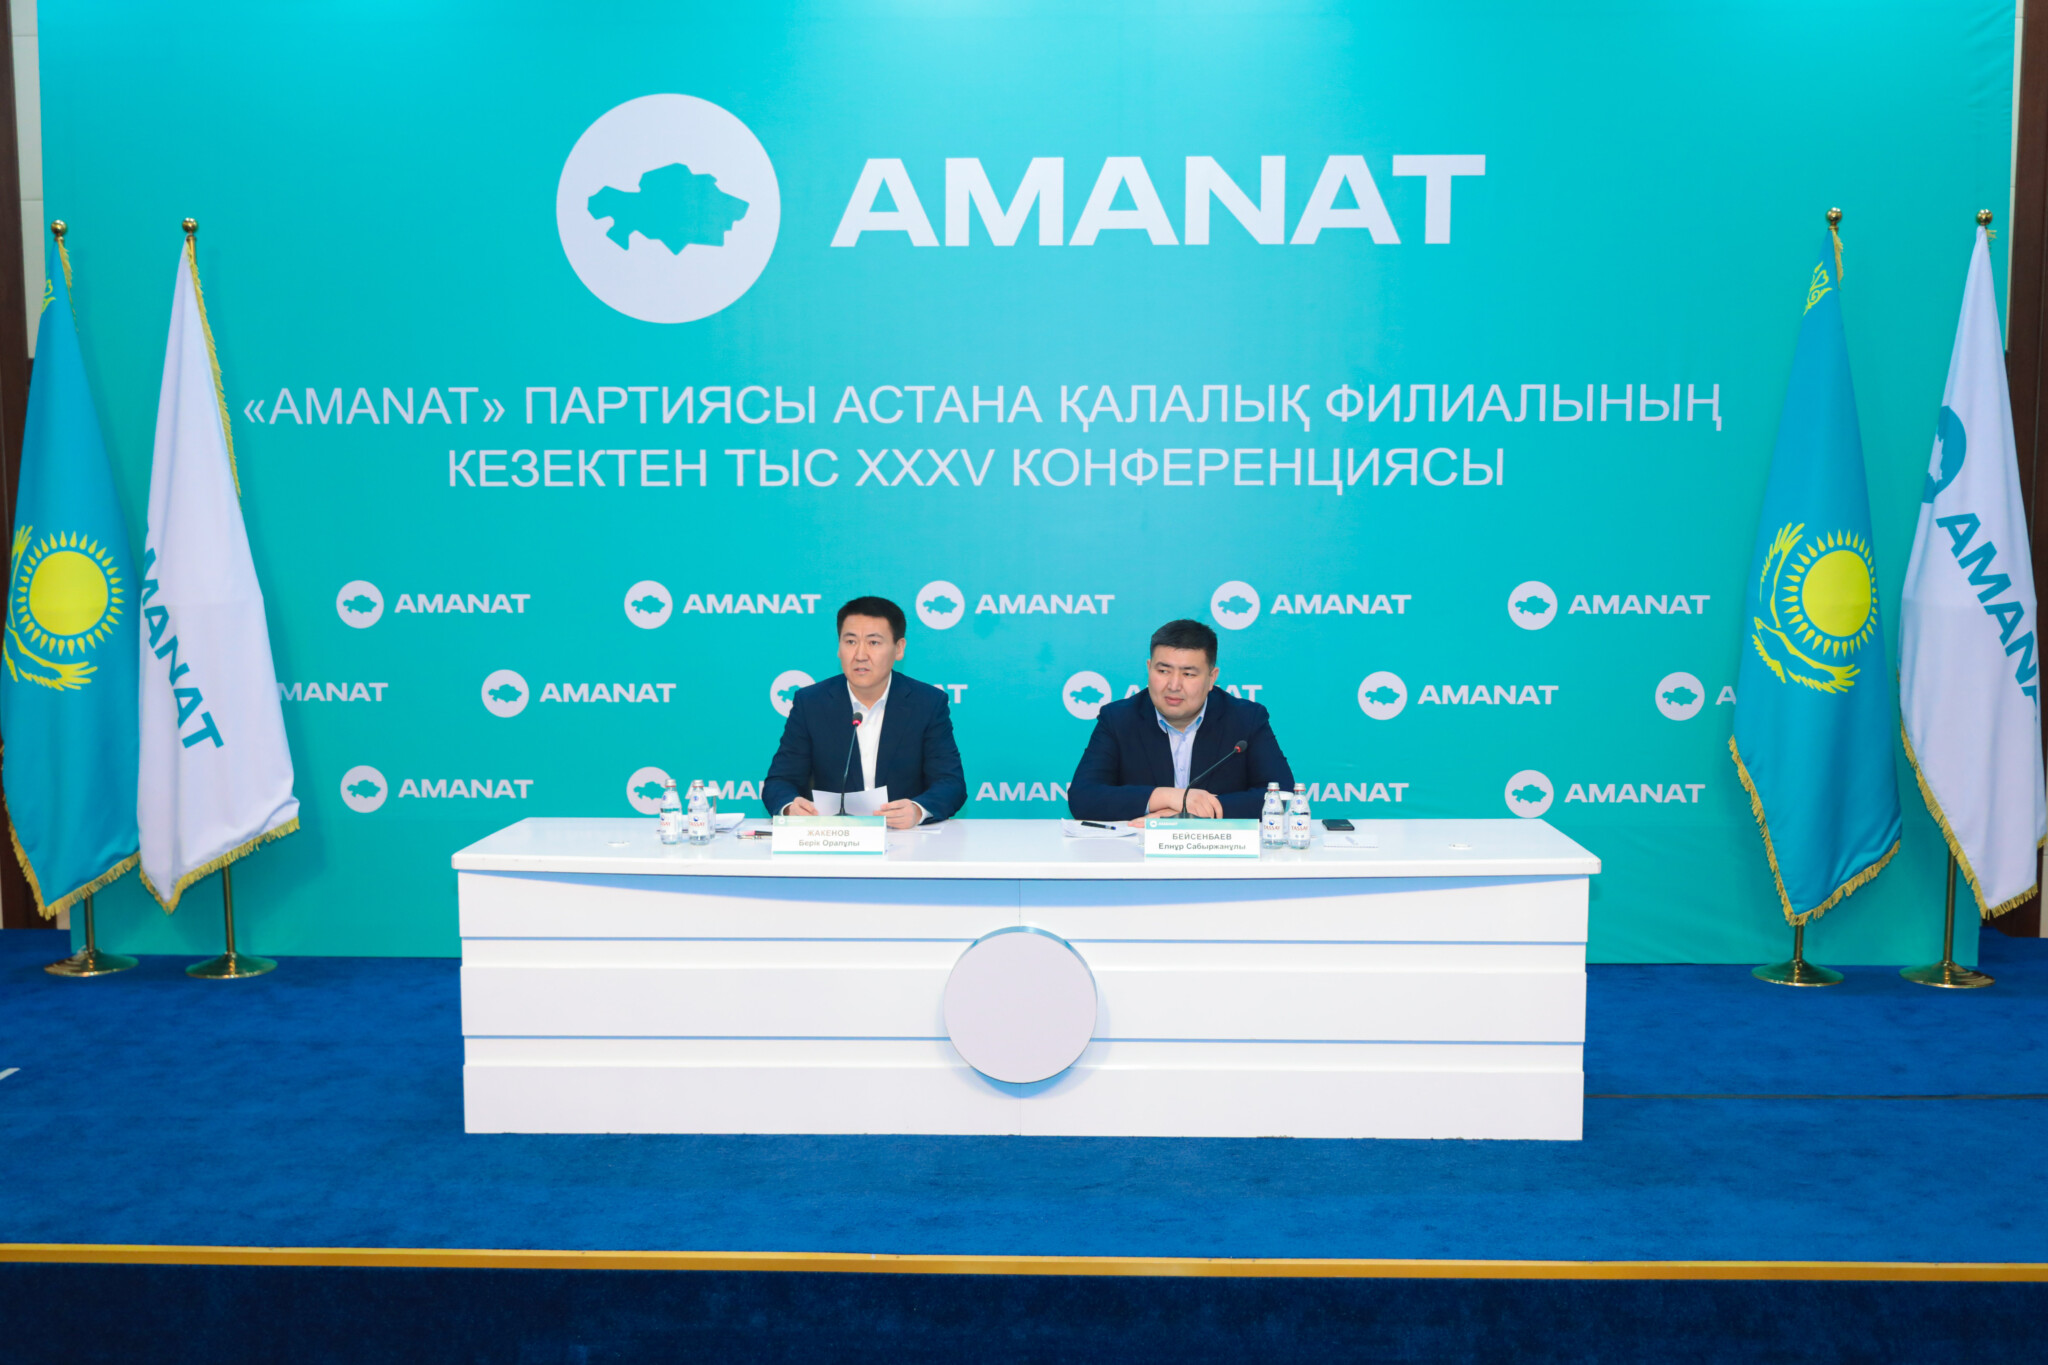 «AMANAT» партиясы Астана қалалық филиалының төрағасы сайланды